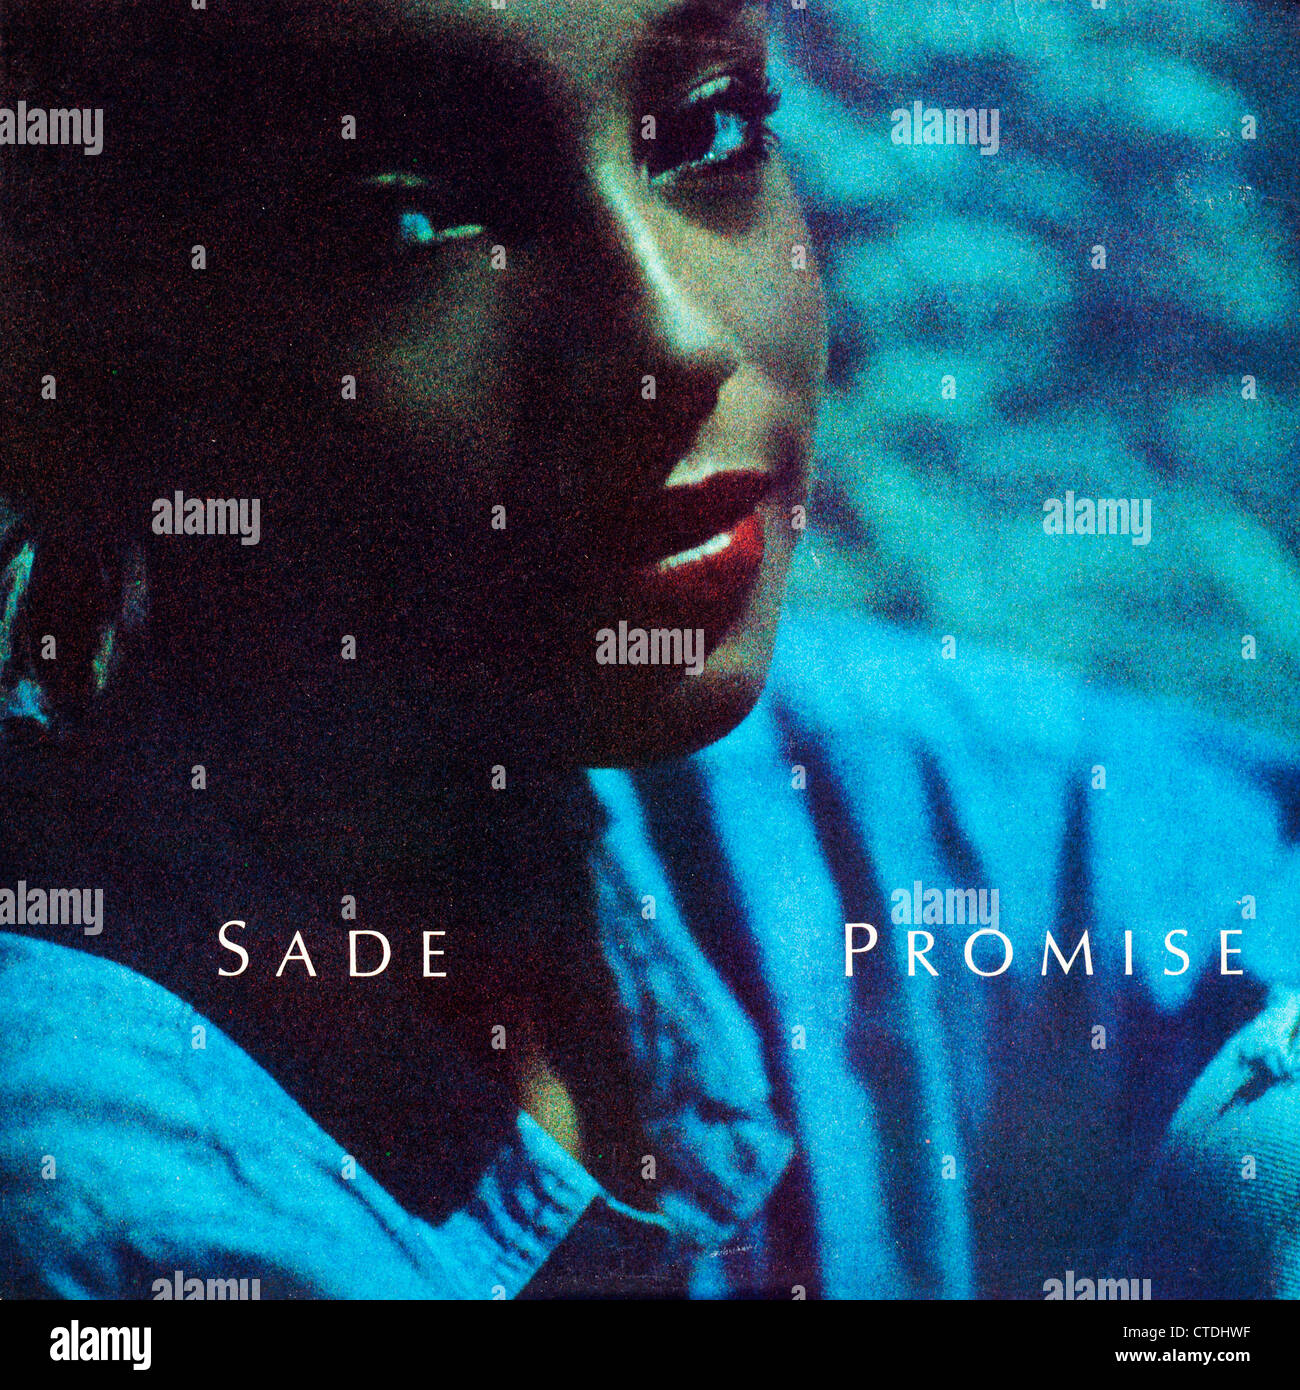 Vinyl LP Schallplatte Abdeckung von Sade - versprechen.  Nur zur redaktionellen Verwendung.  Kommerzielle Nutzung untersagt. Stockfoto